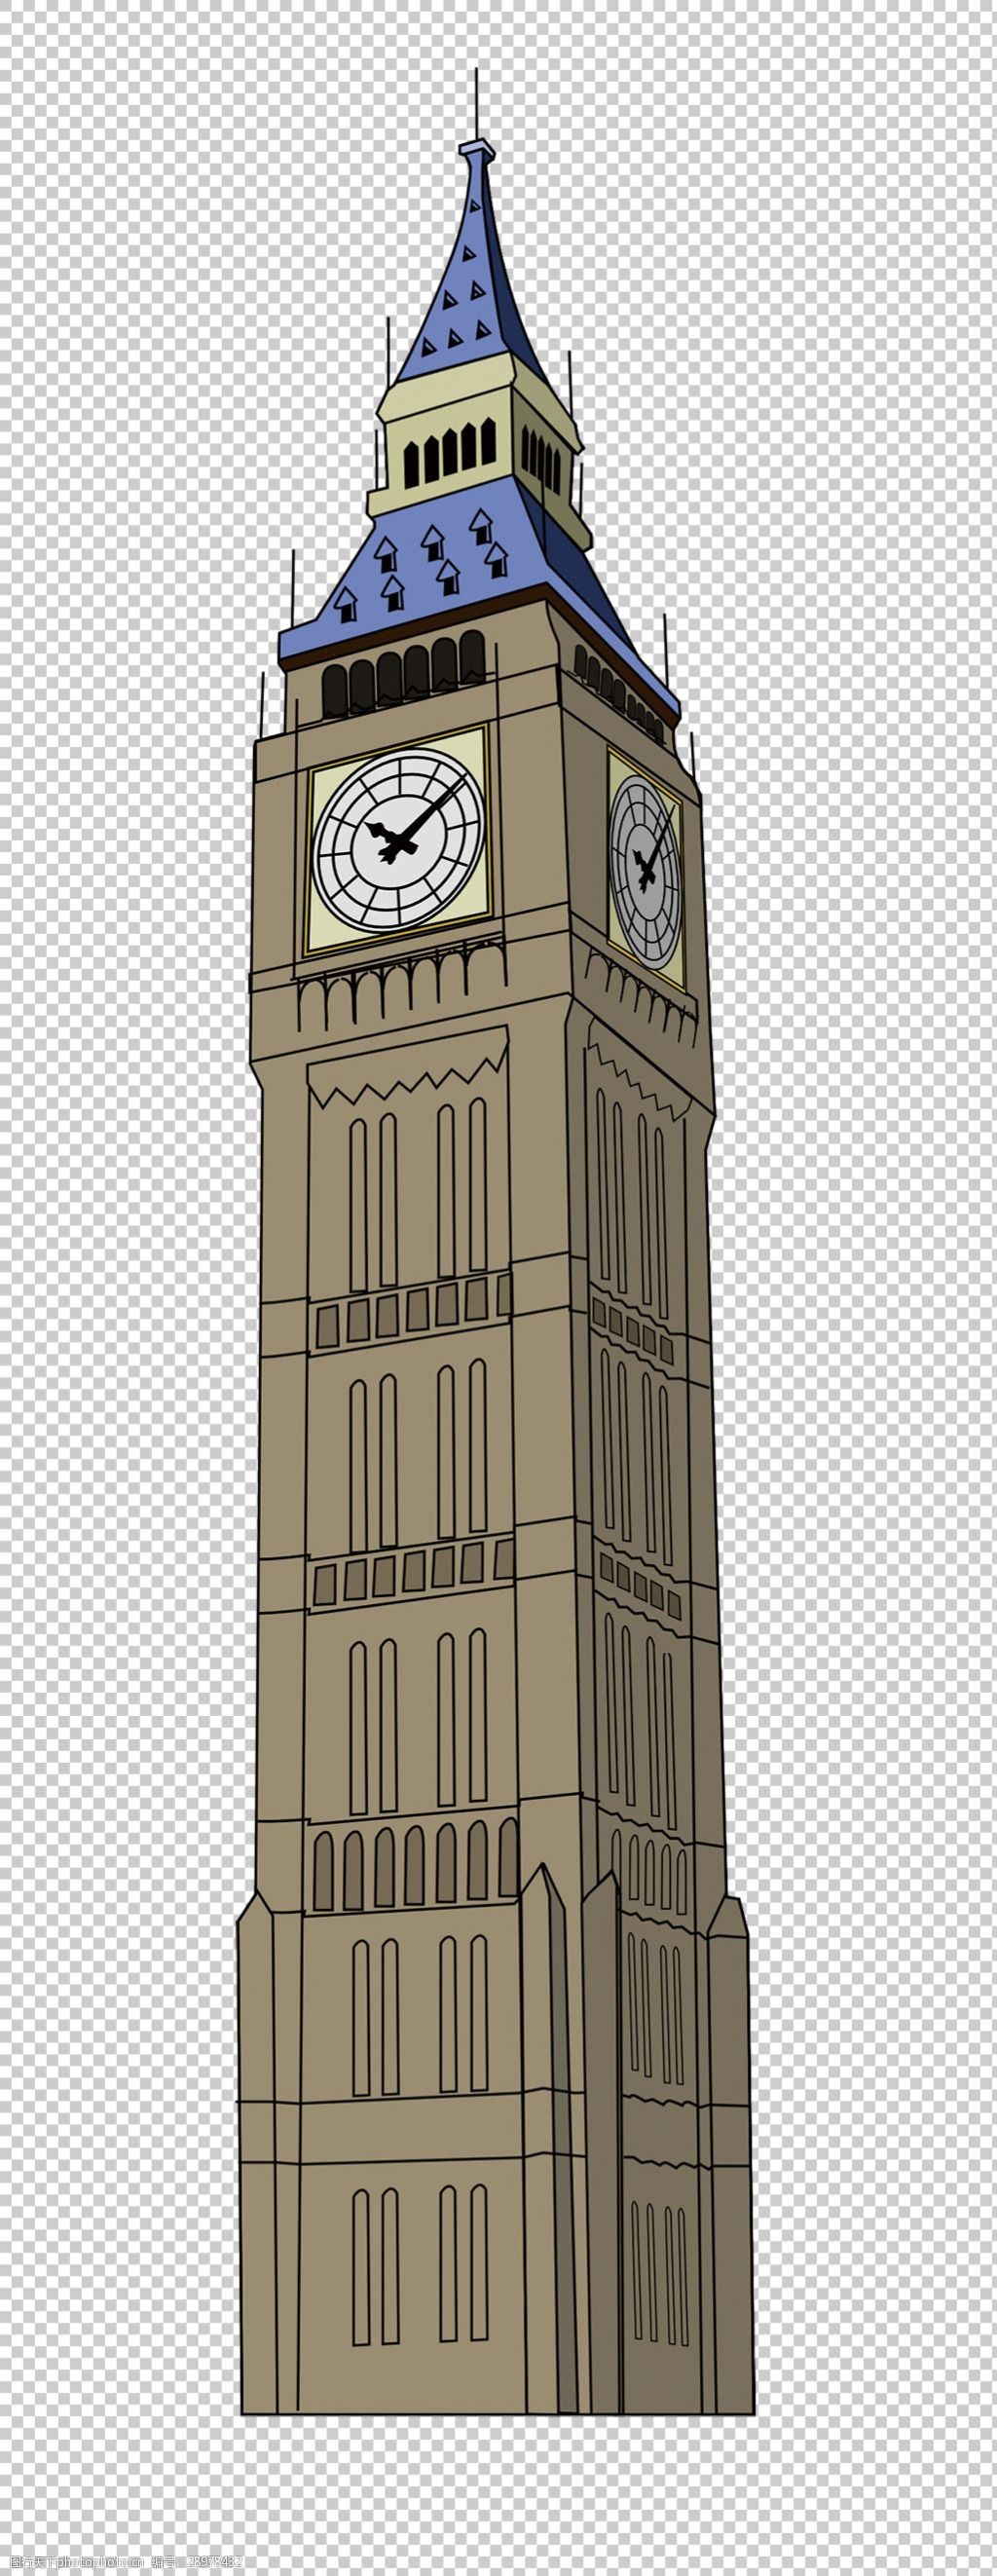 英国大本钟手绘素描图片